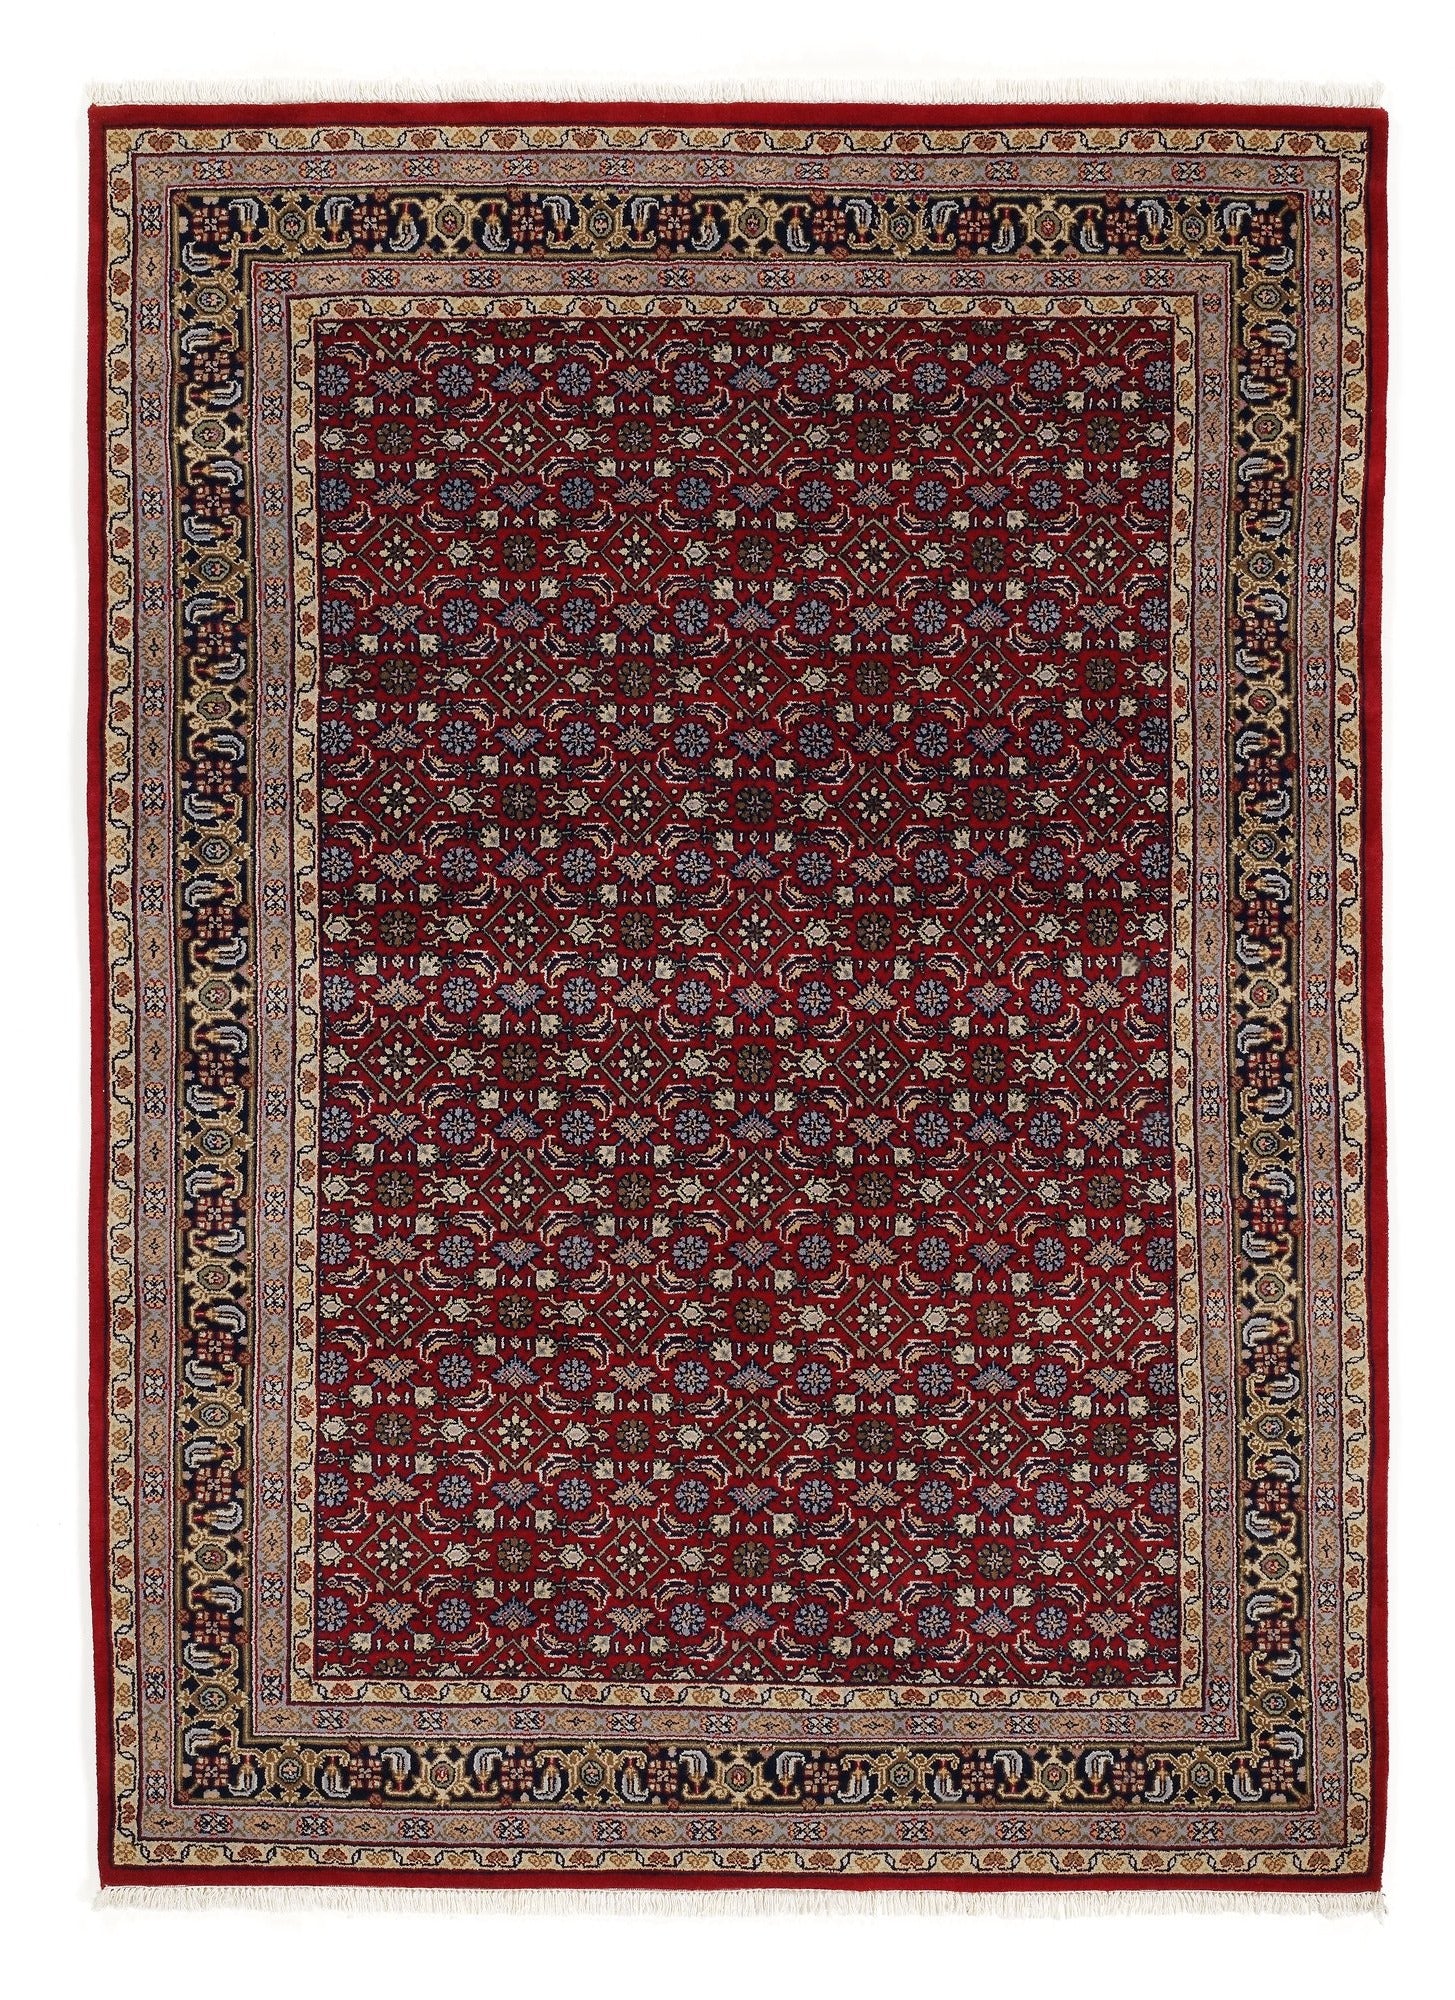 OCI Teppich HIMLA HERATI rot-blau echter klassischer Orient-Teppich handgeknüpft